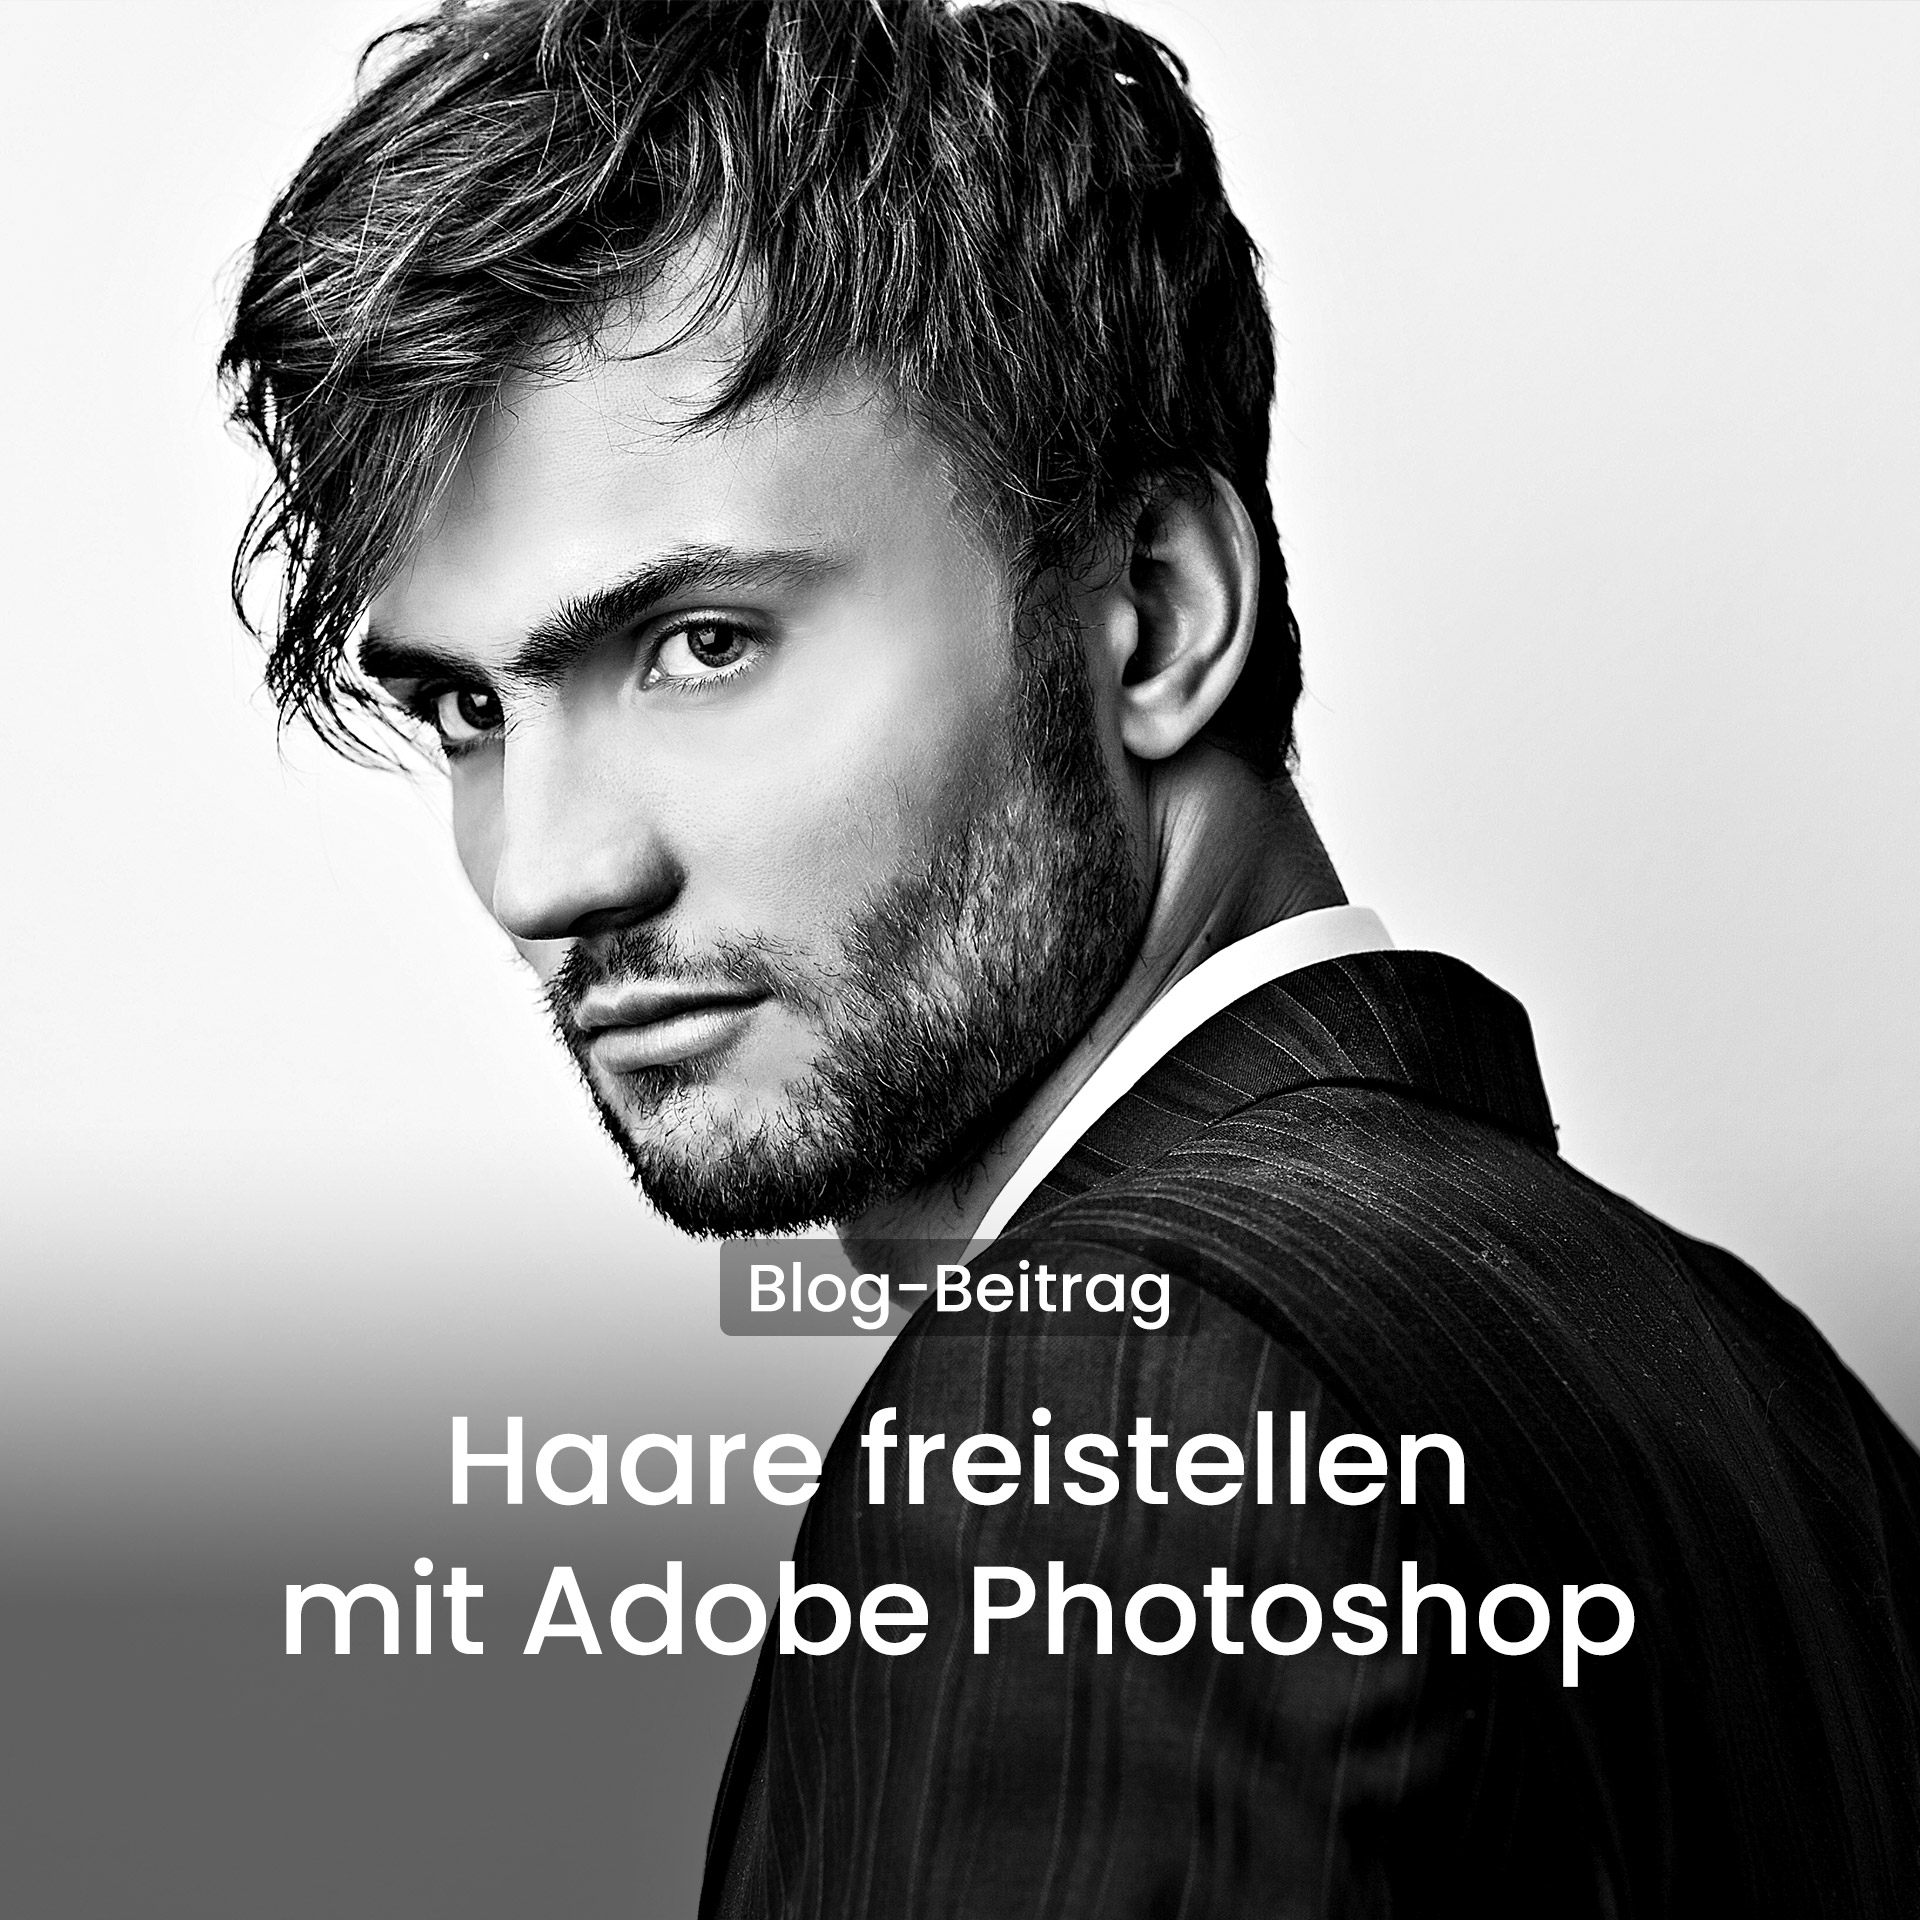 Haare freistellen mit Adobe Photoshop - Tutorial für Portraitfotografen